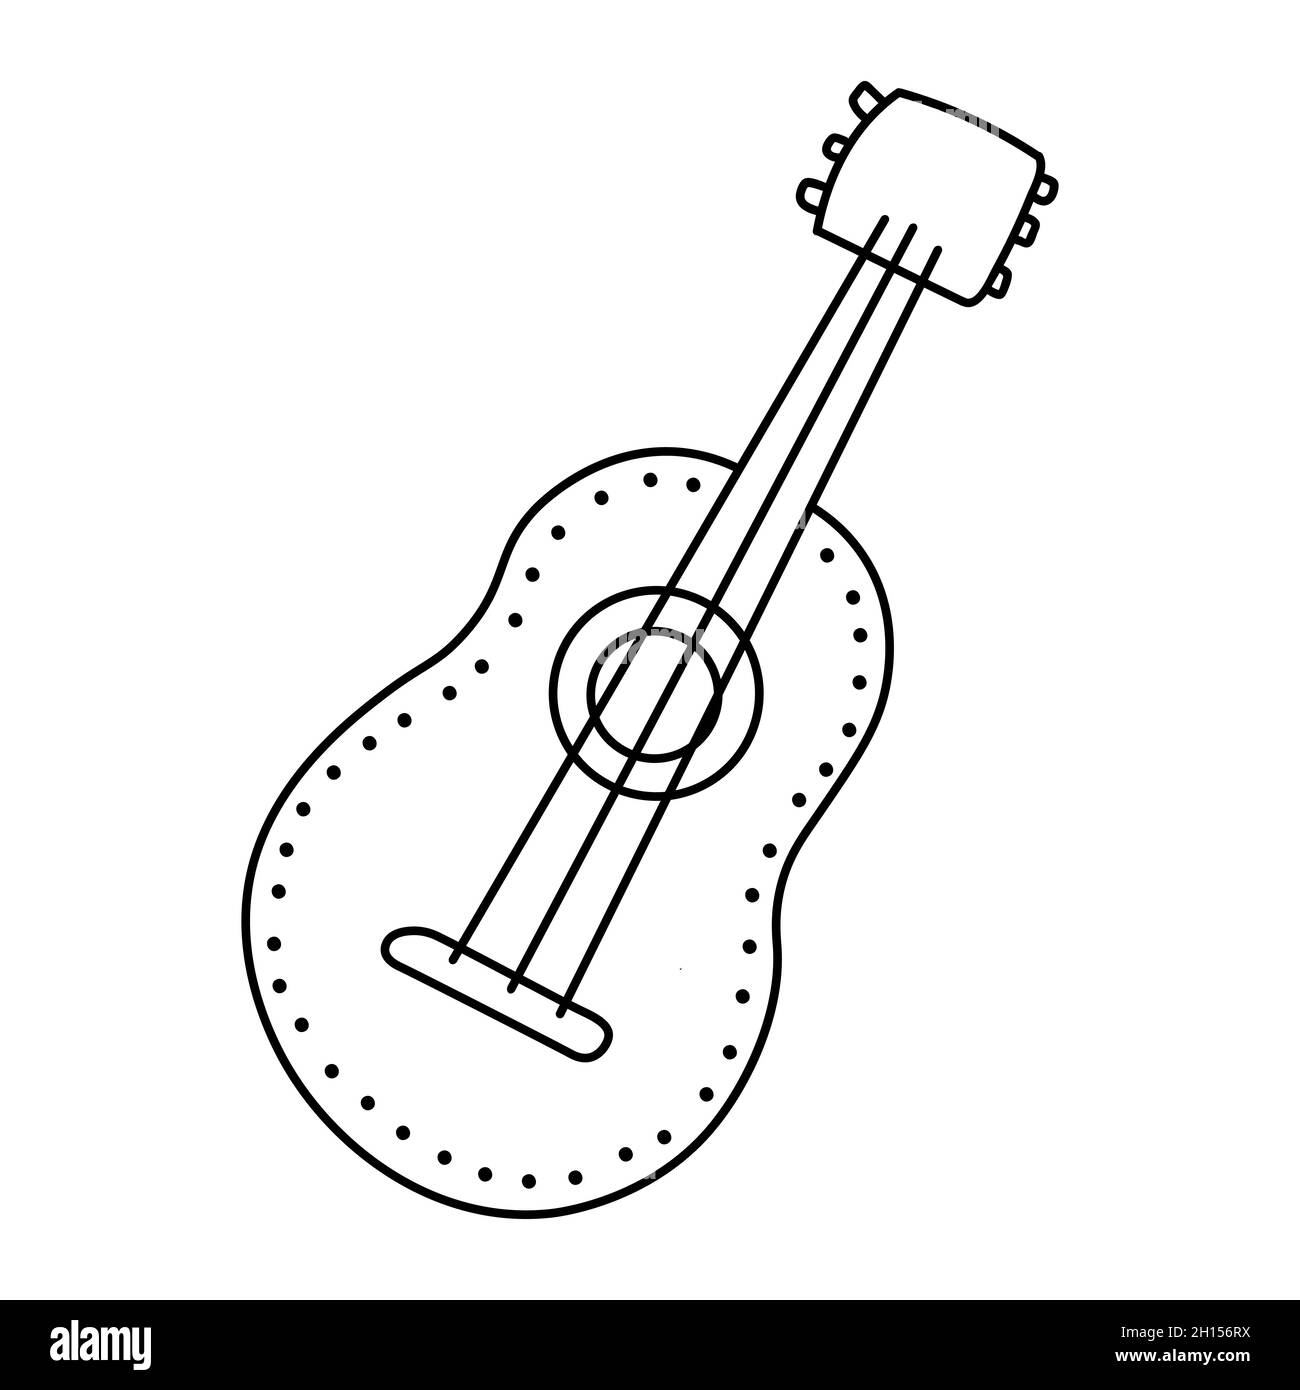 Guitare acoustique ou ukulele.Illustration vectorielle de style doodle isolée sur fond blanc.Instrument de musique dessiné à la main. Illustration de Vecteur